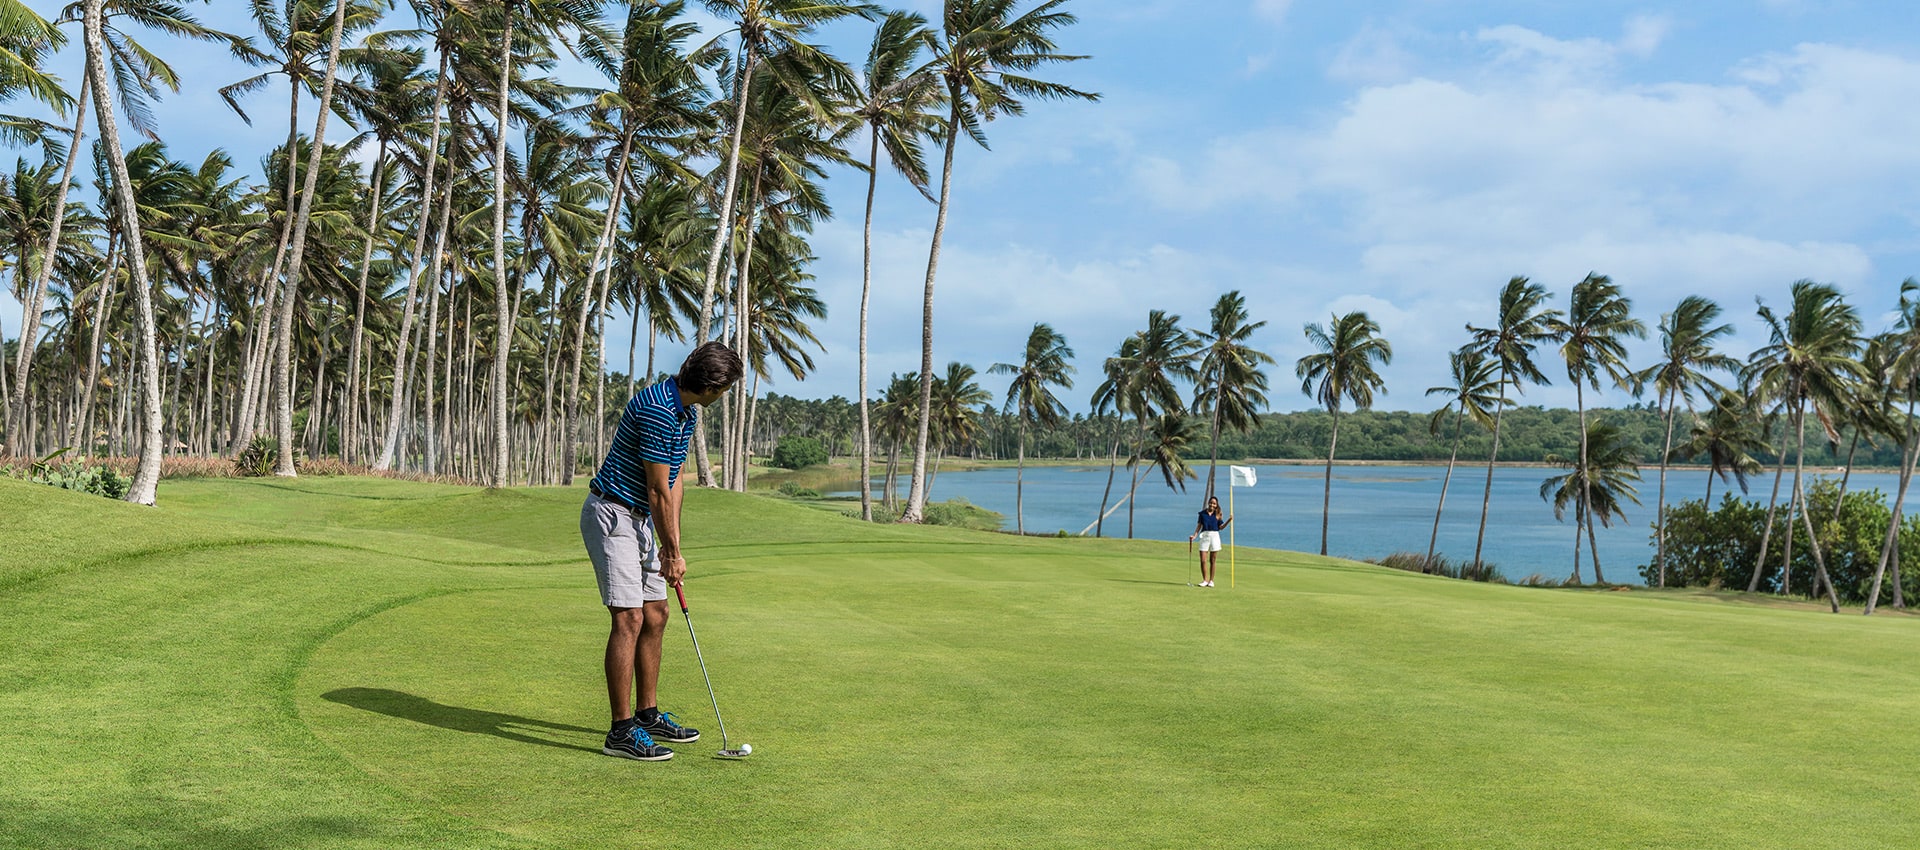 GolfGolf in Sri Lanka